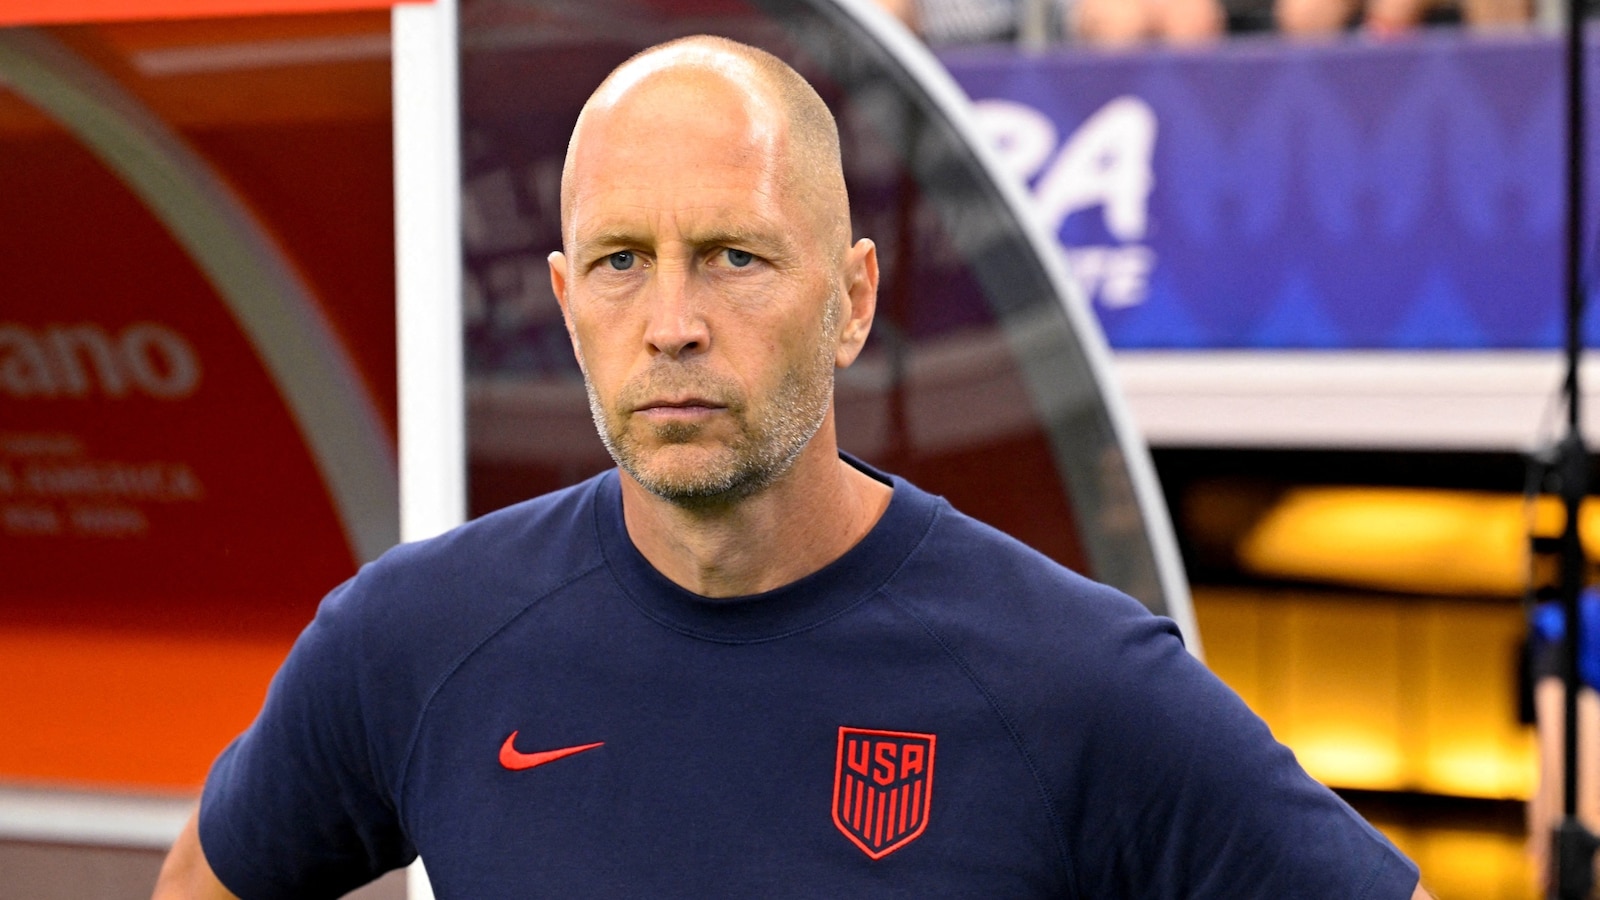 US men's national soccer coach Gregg Berhalter fired